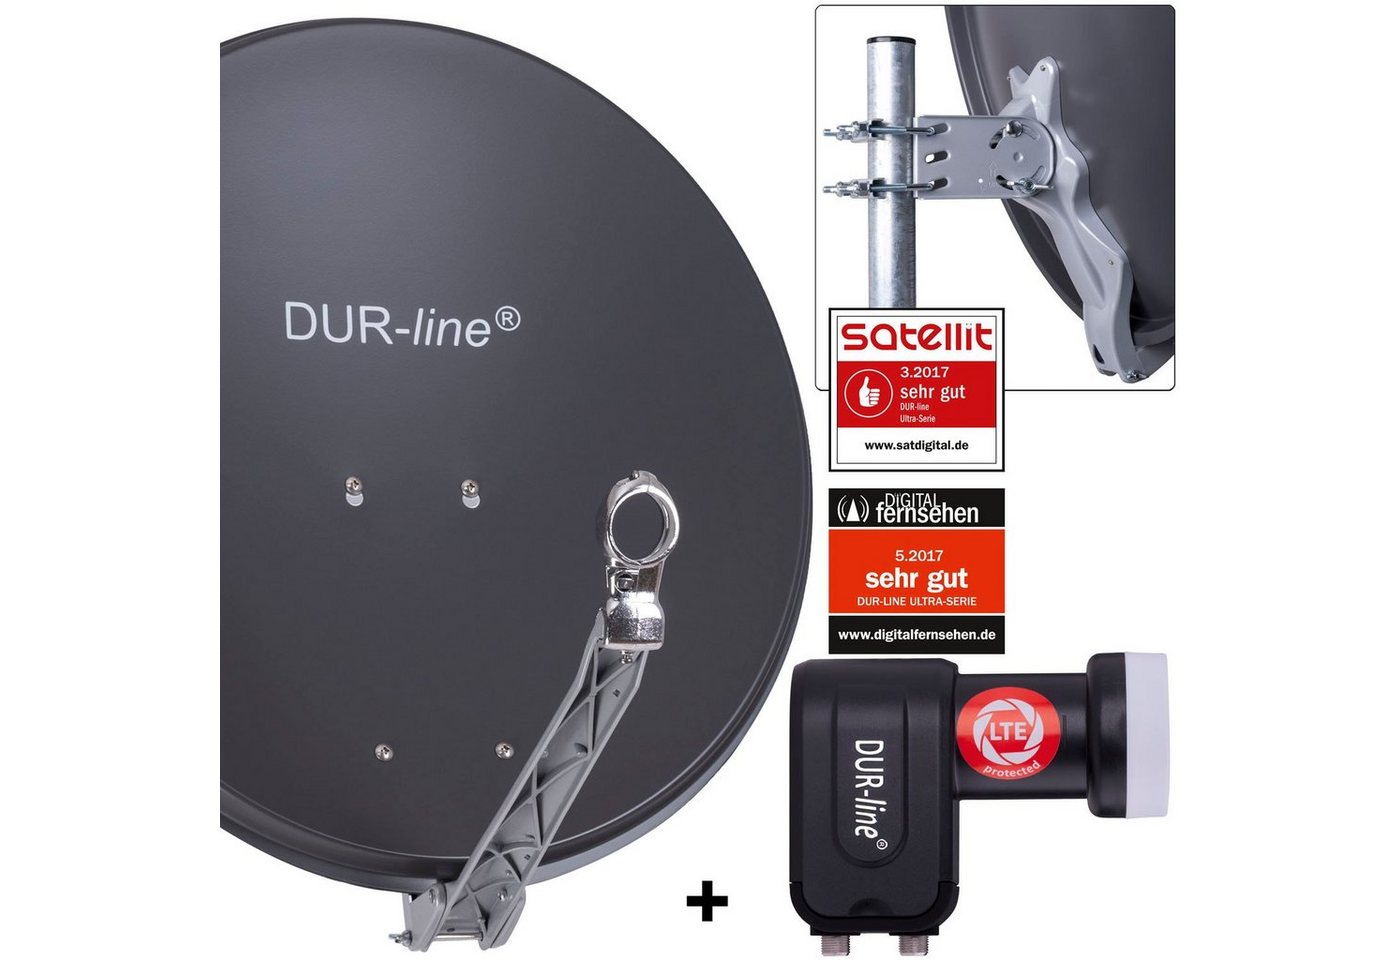 DUR-line DUR-line 2 Teilnehmer Set - Qualitäts-Alu-Satelliten-Komplettanlage - Sat-Spiegel von DUR-line